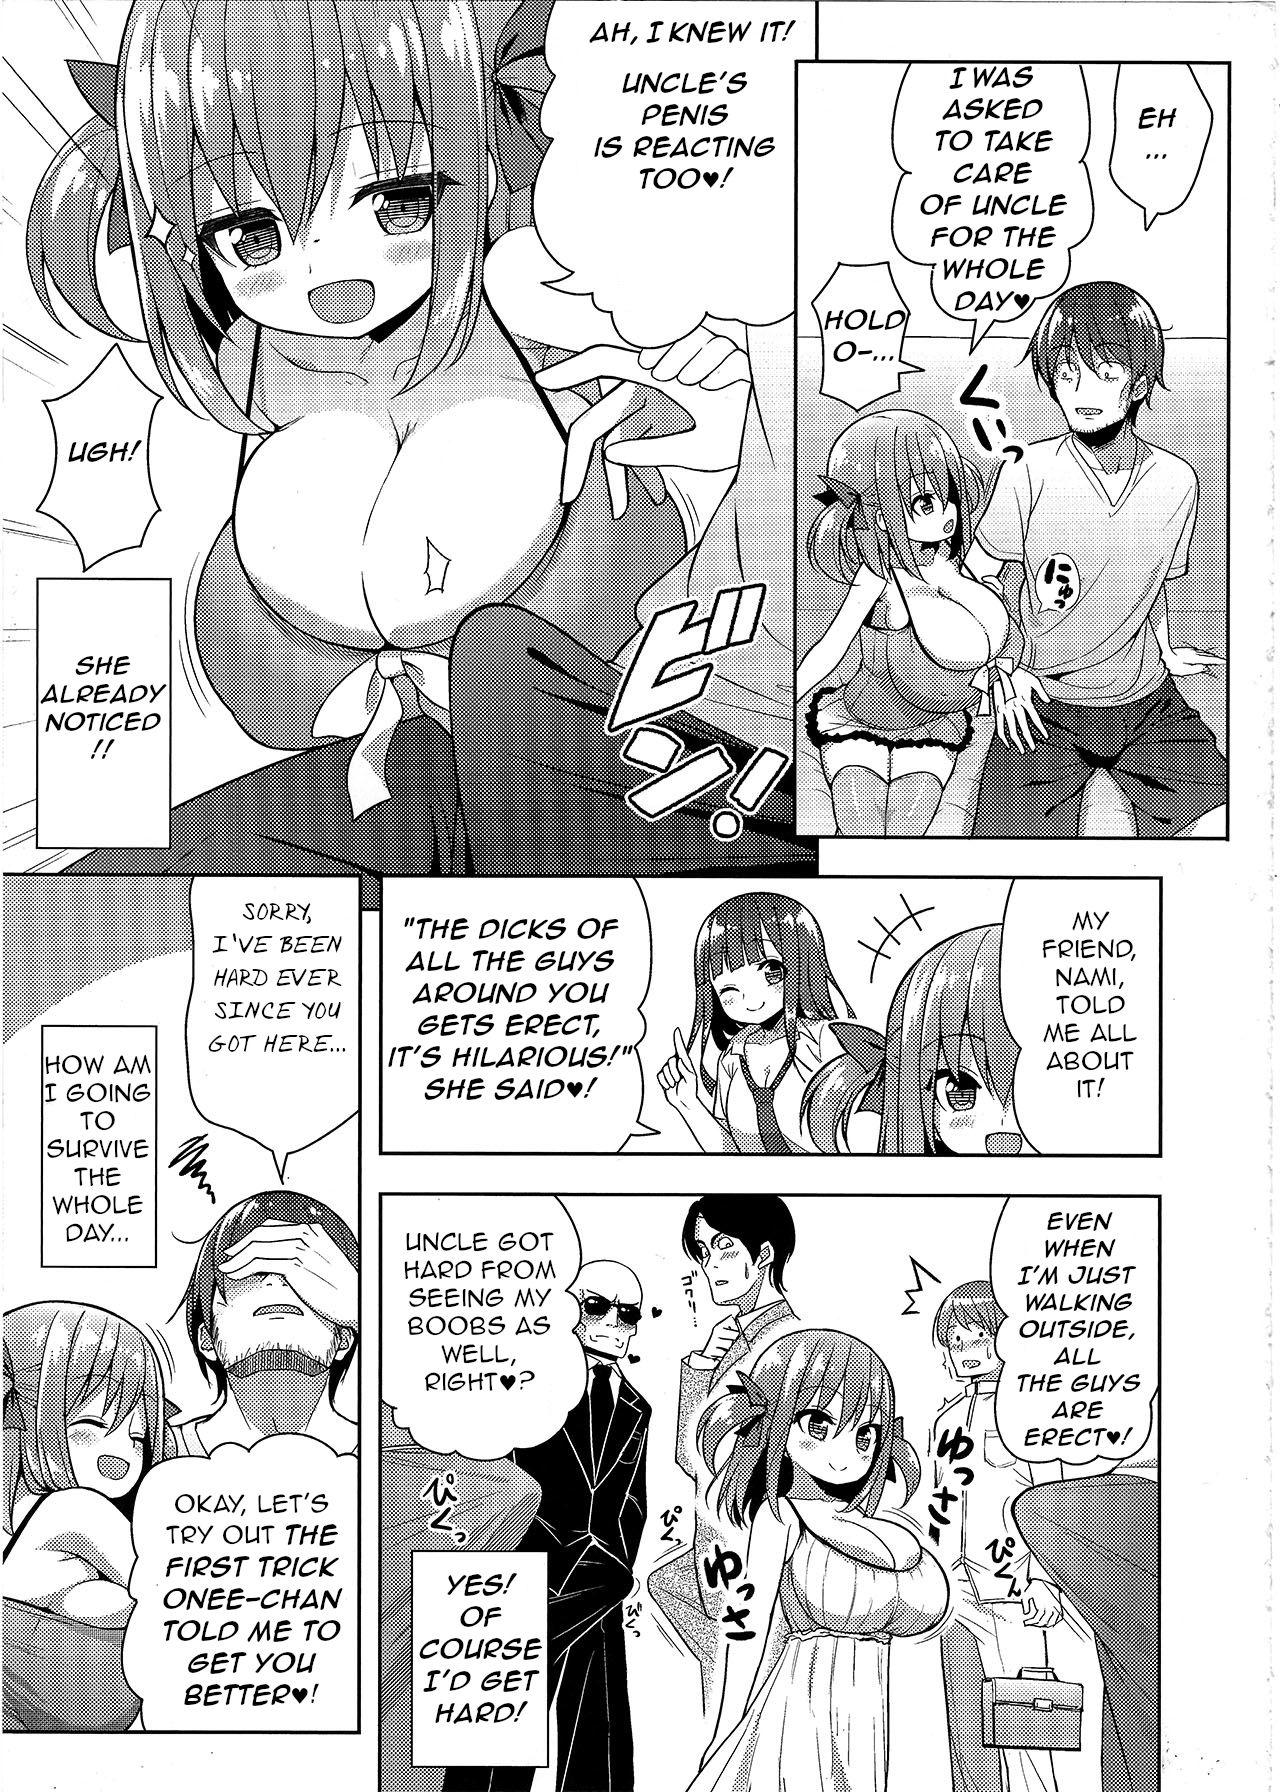 Retro Genki ga Nai nara Shite Ageru - Original Topless - Page 6